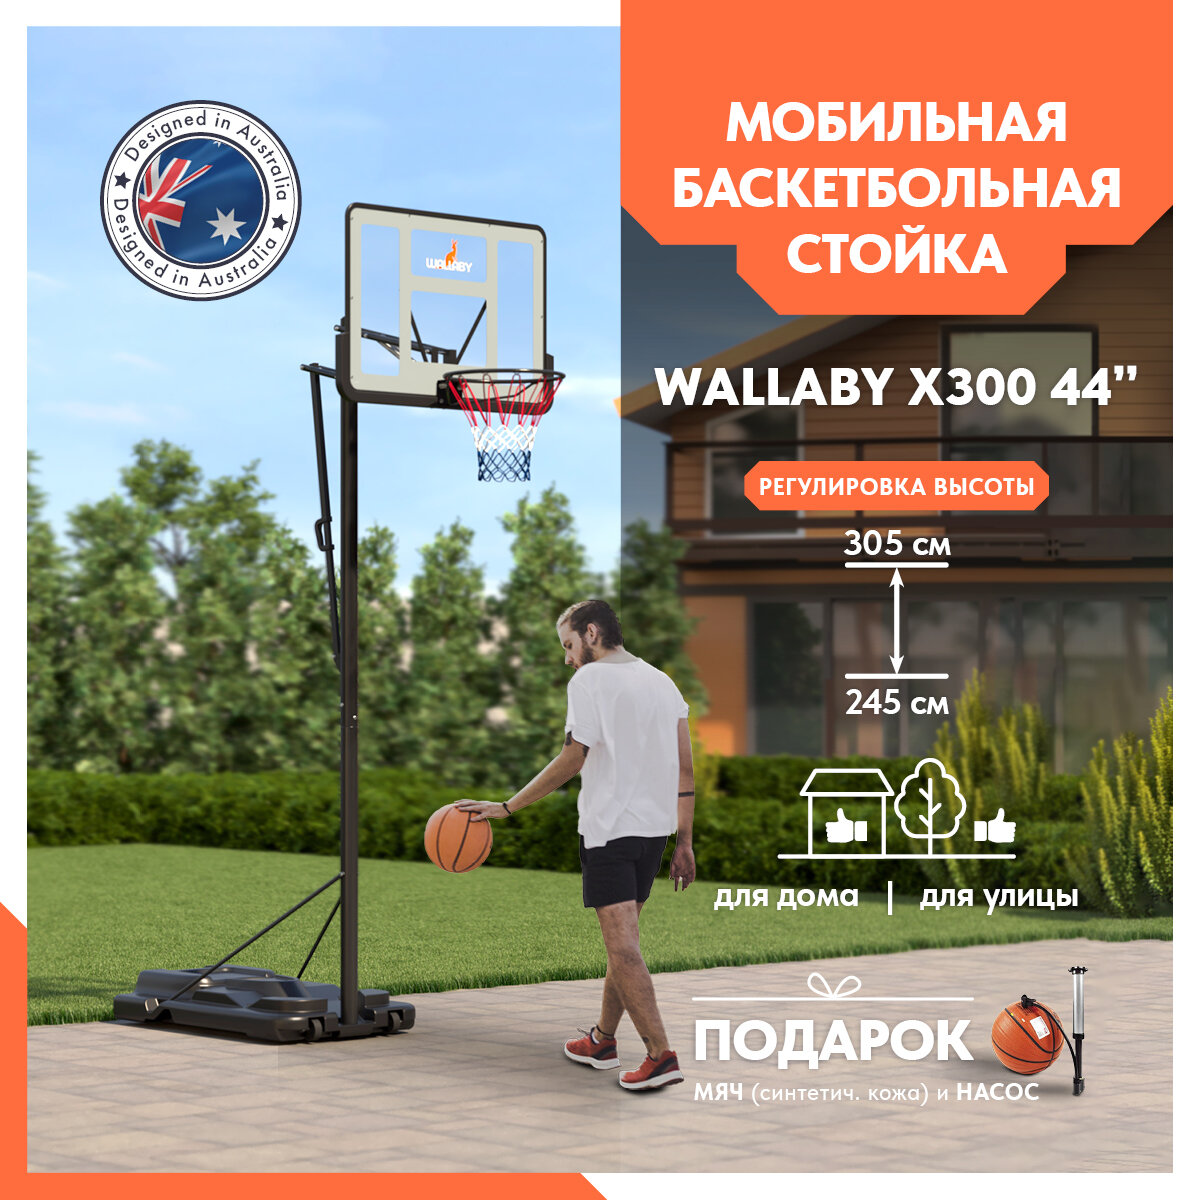 Баскетбольная стойка Wallaby Х300 (44")